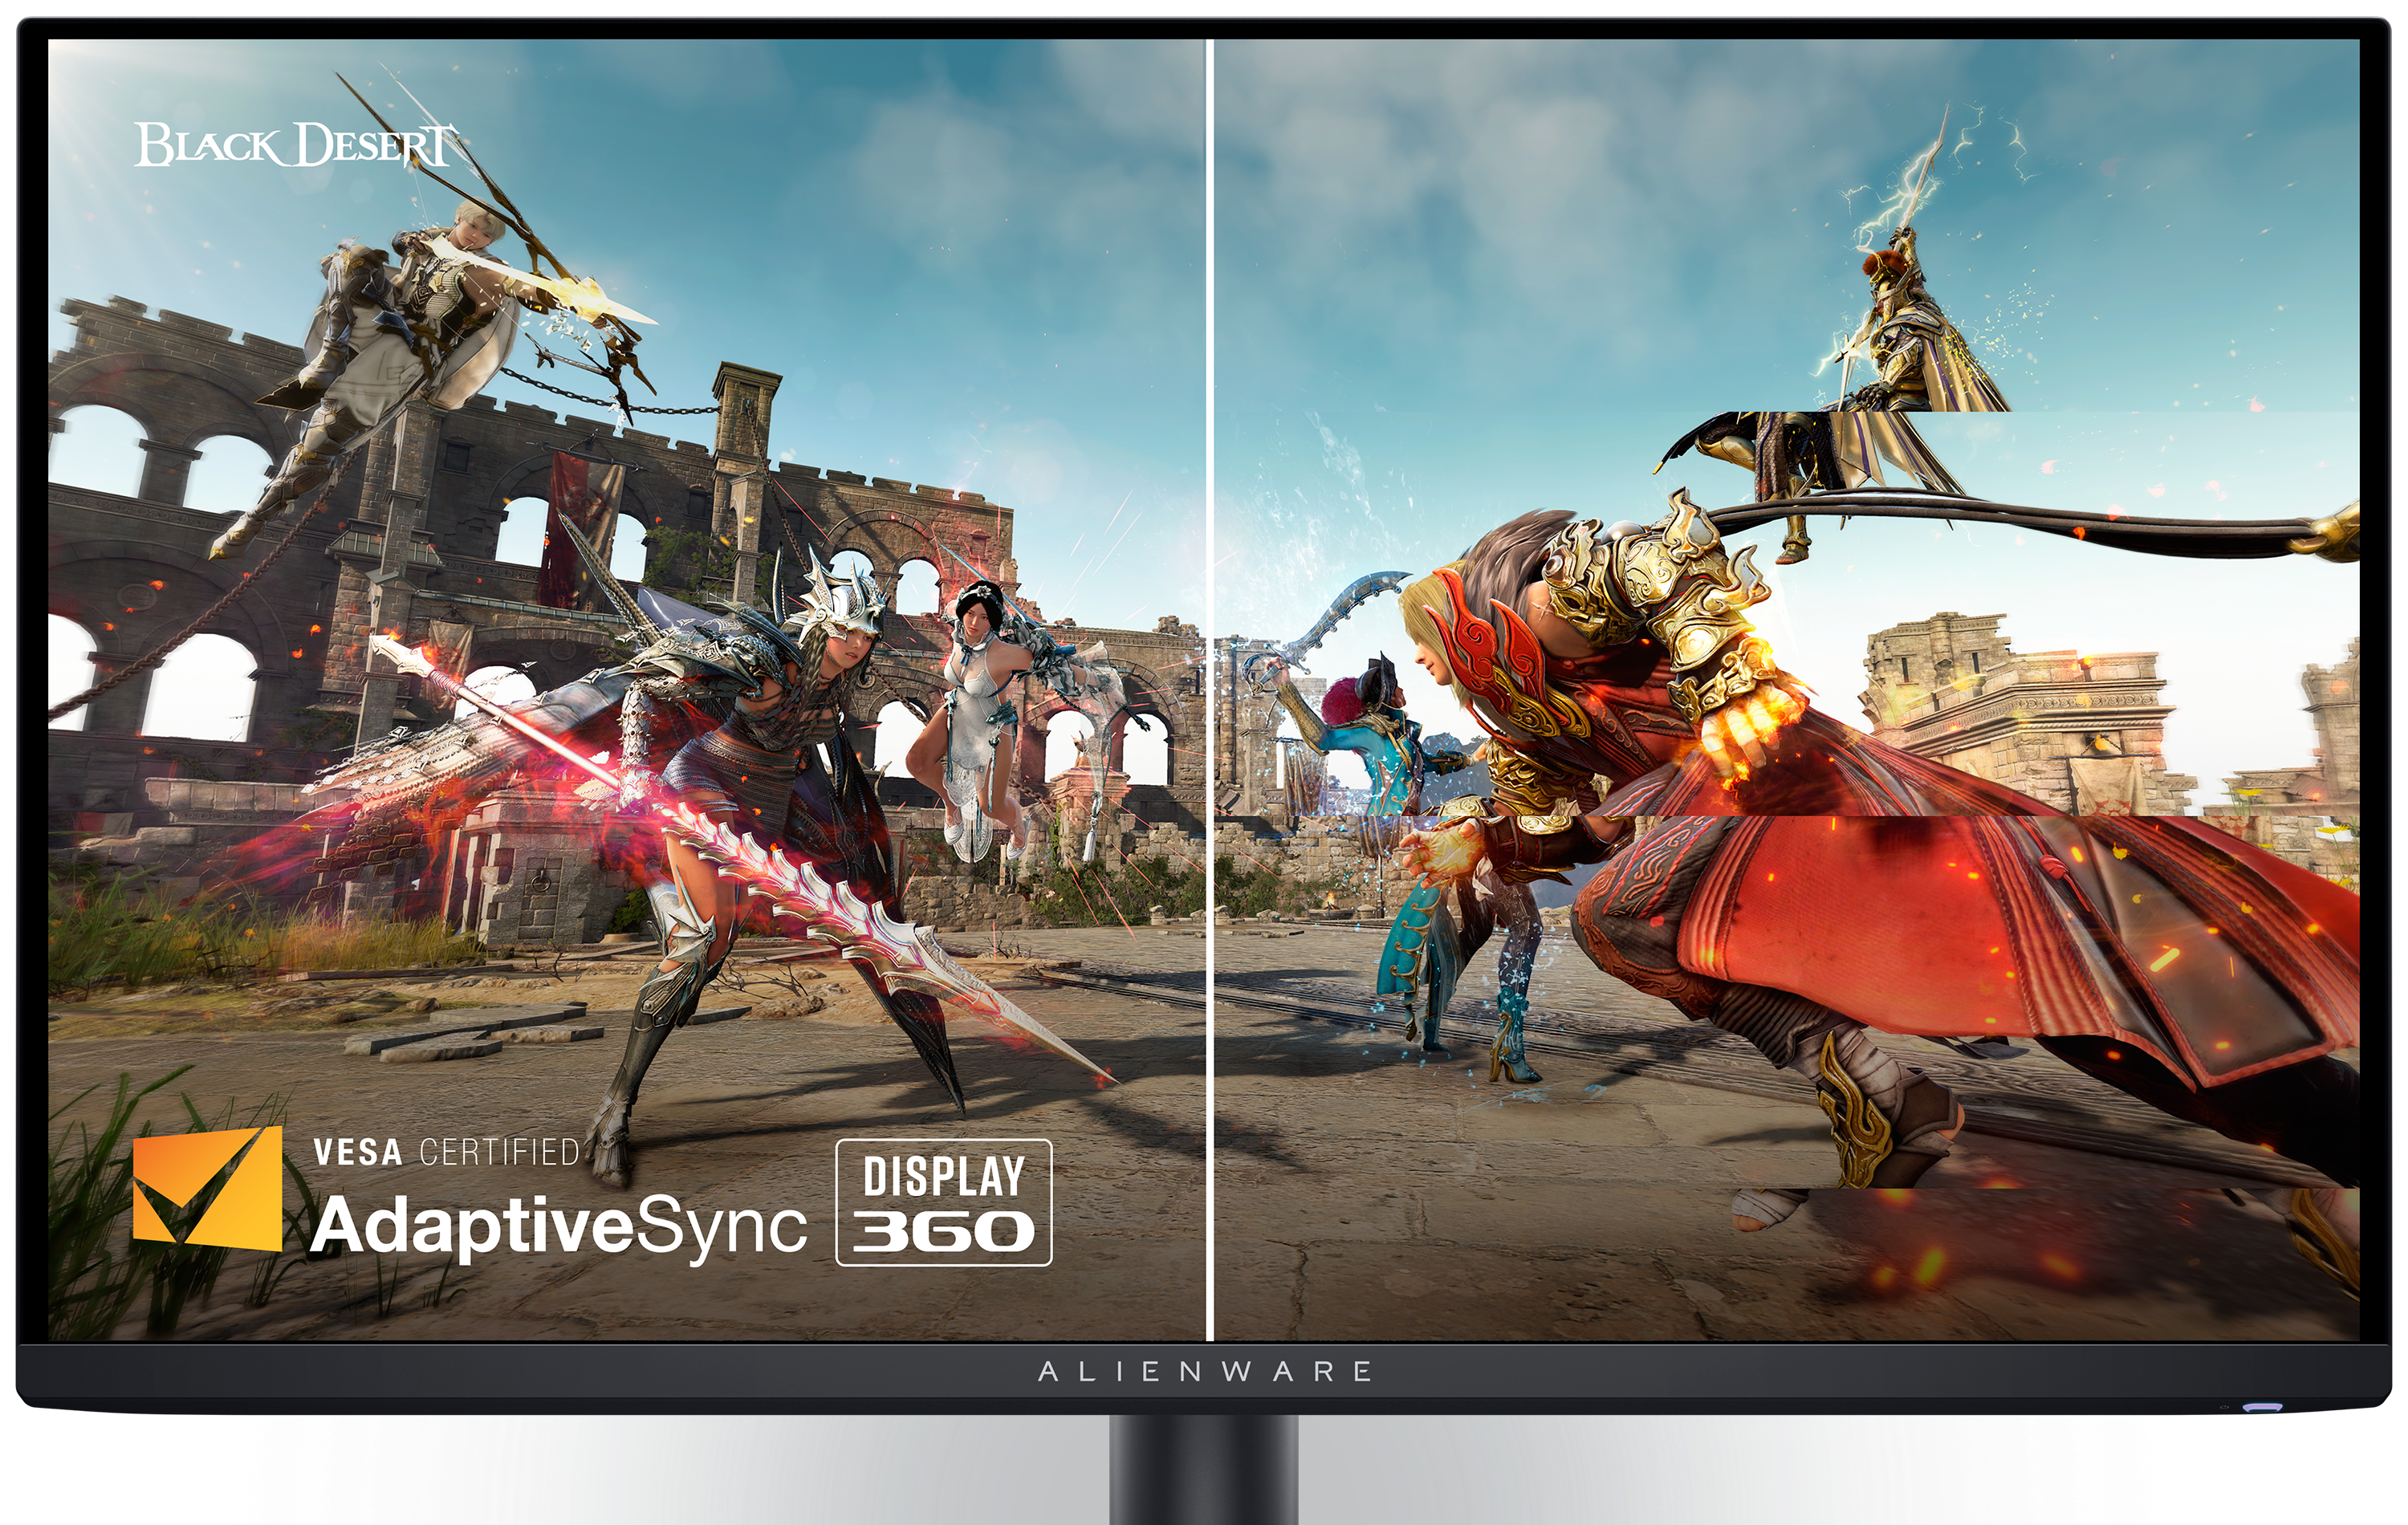 Dell AW2725DFゲーミング モニター。画面に「Black Desert」のゲーム イメージとVesa Certified AdaptiveSyncのロゴが映っています。